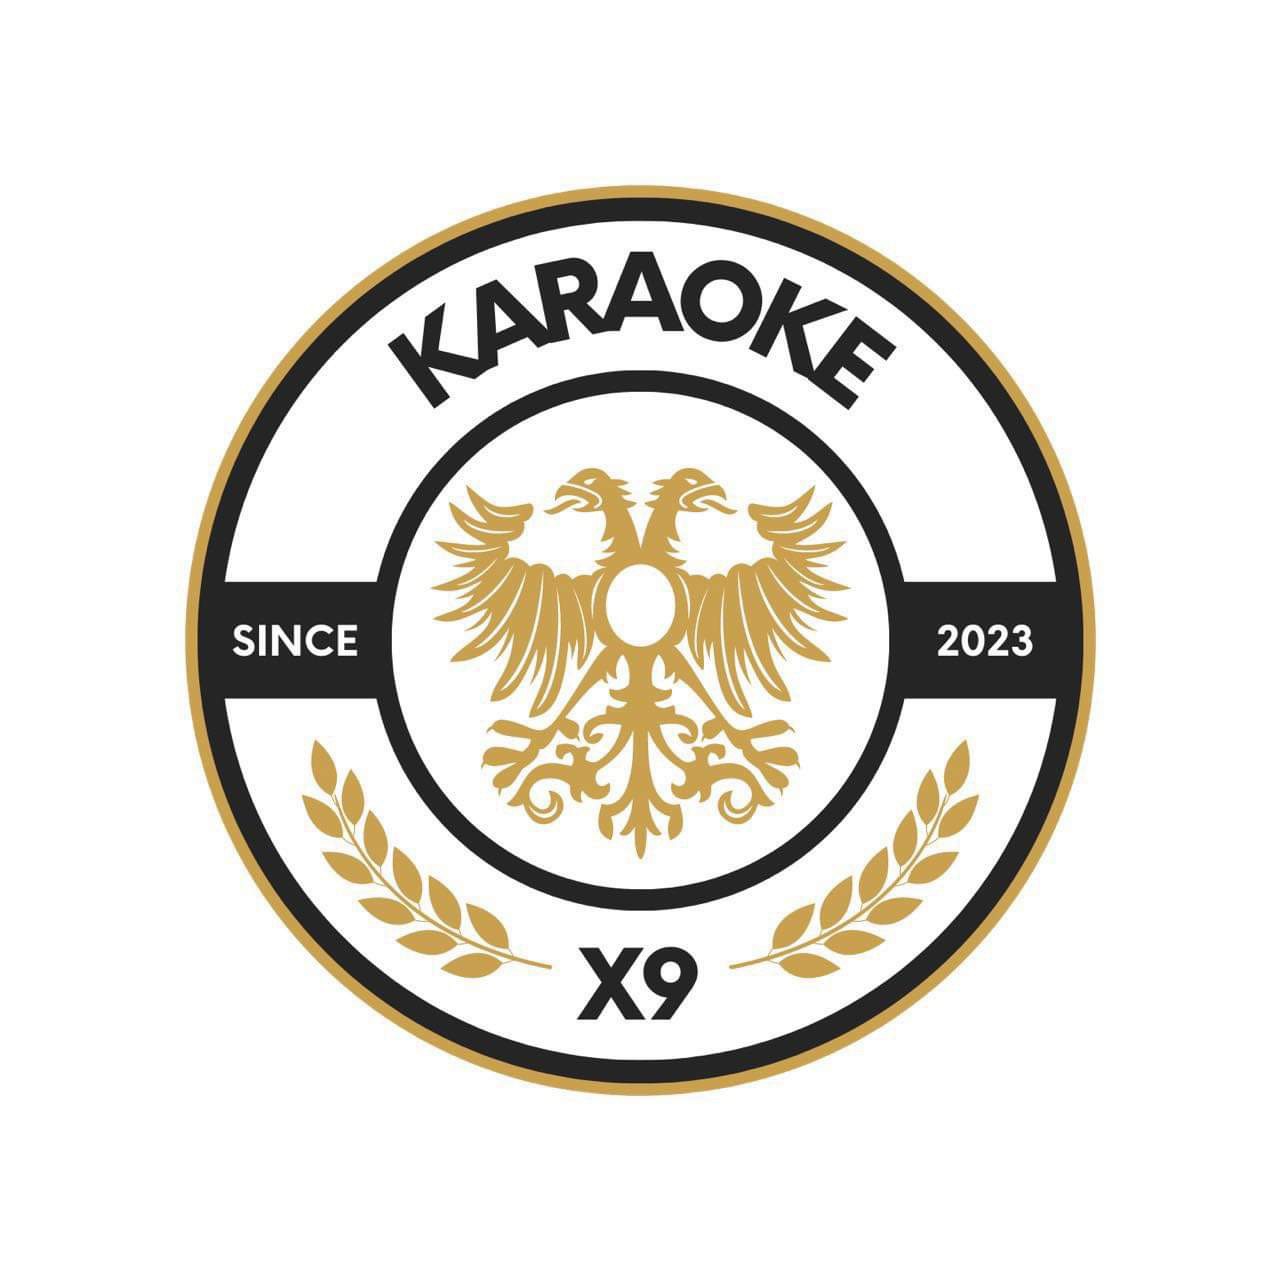 FC Karaoke X9